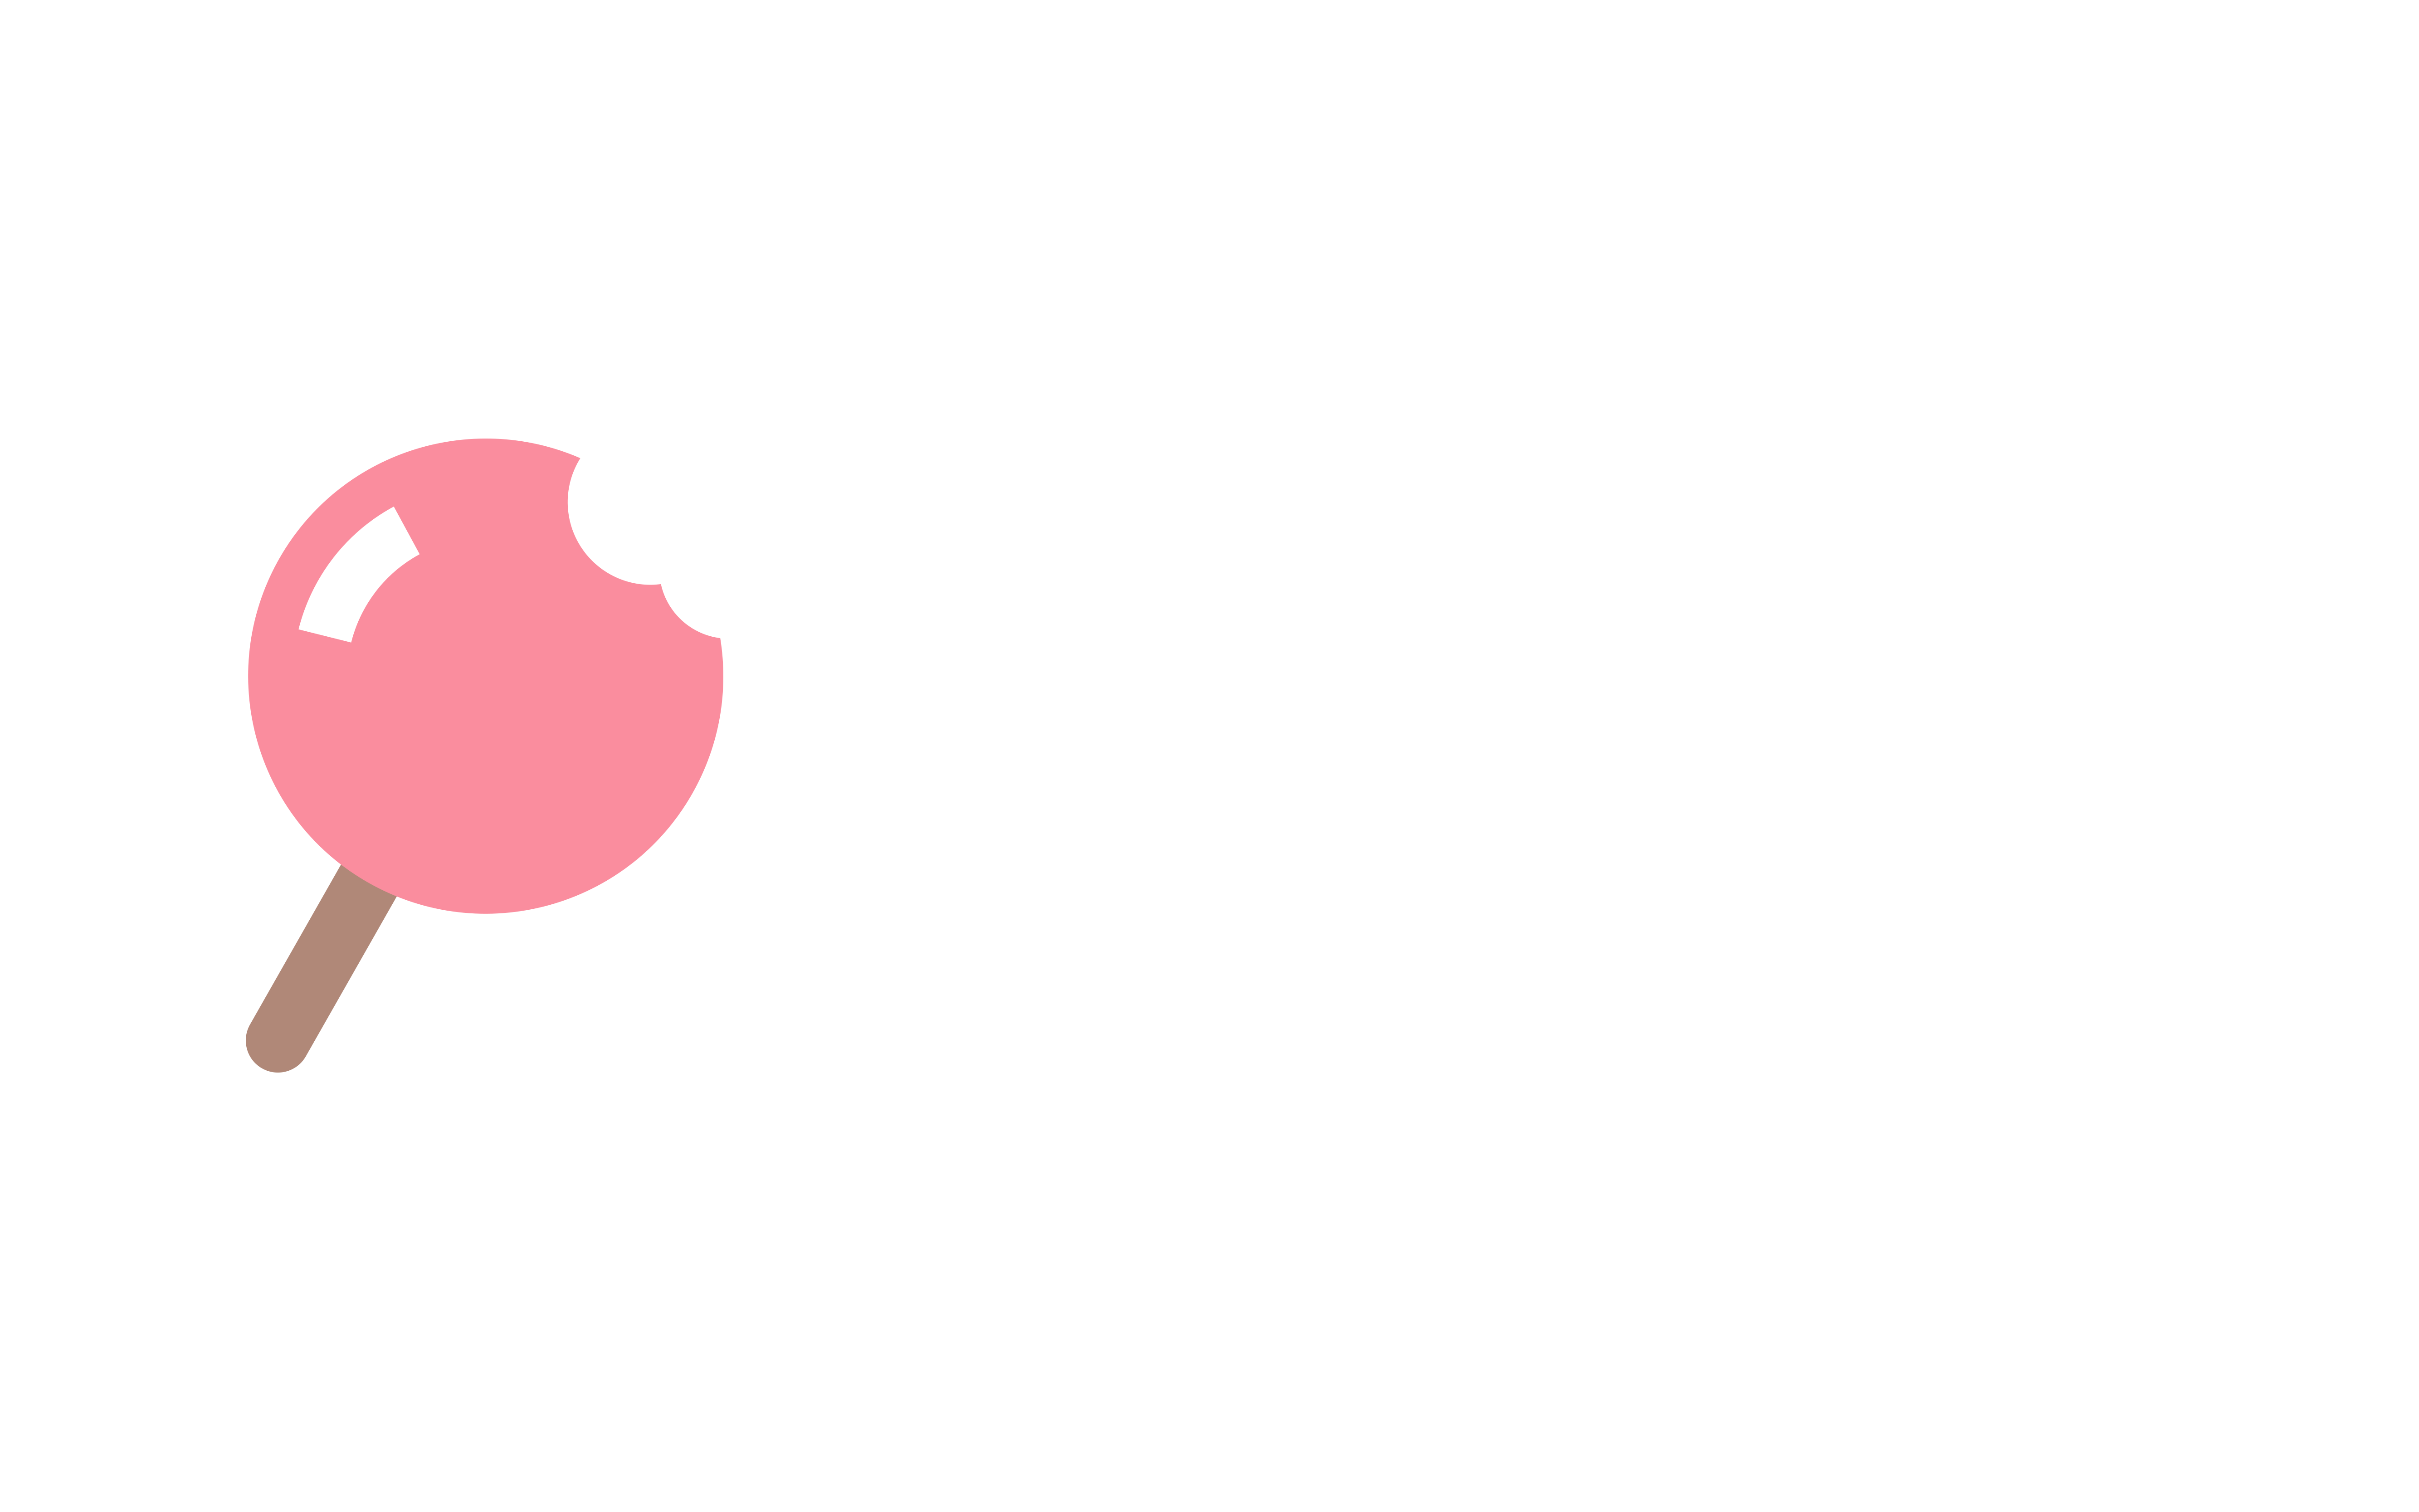 Fundoll Global Ltd.